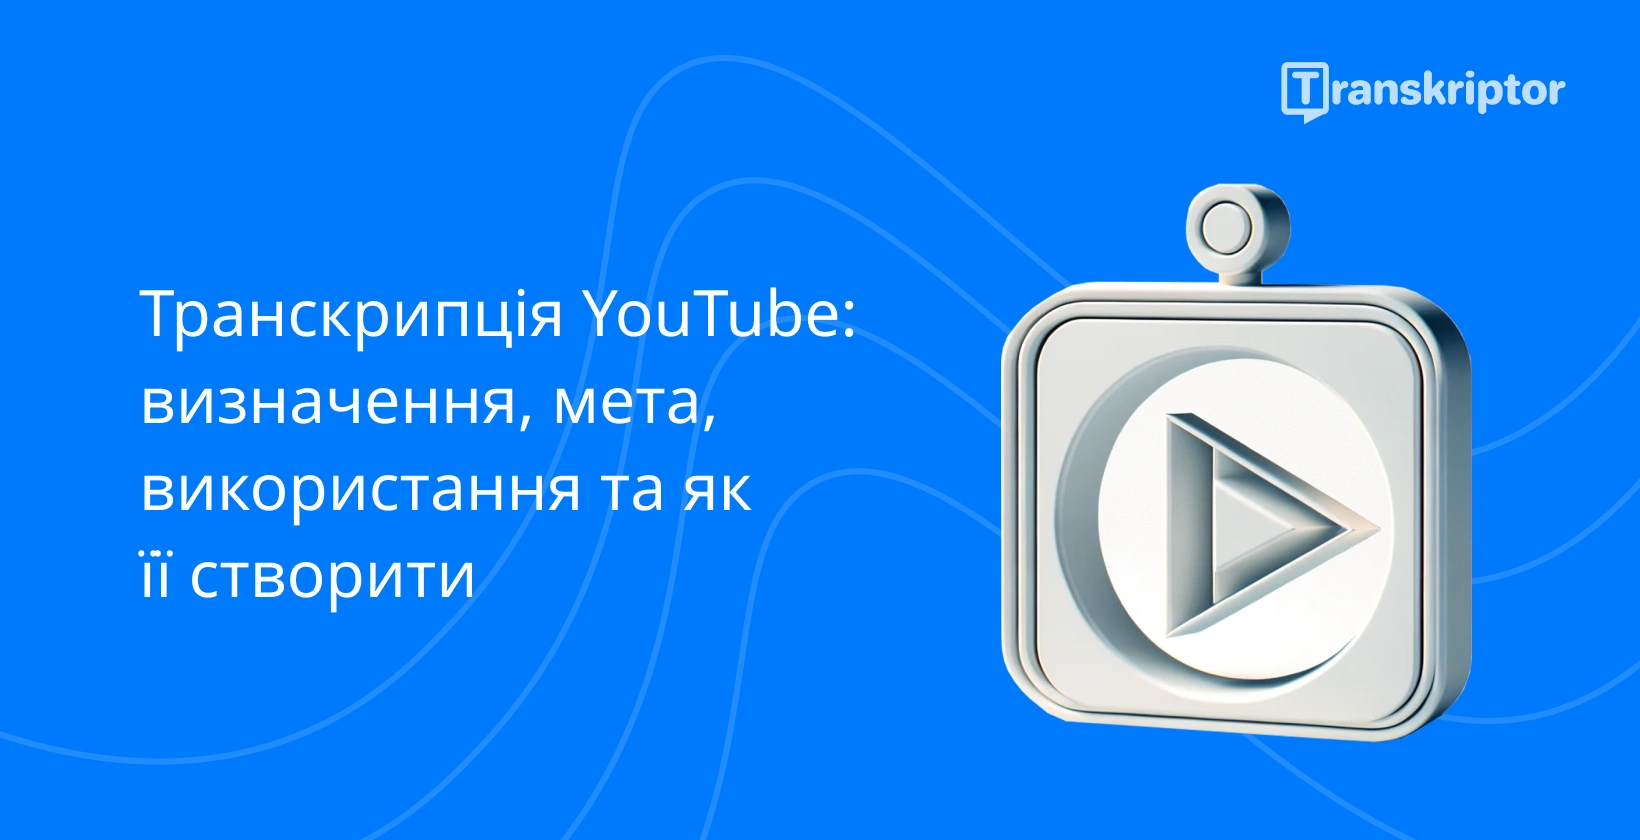 Транскрибувати YouTube Shorts символізується кнопкою відтворення та документами всередині 3D-кадру на синьому тлі.